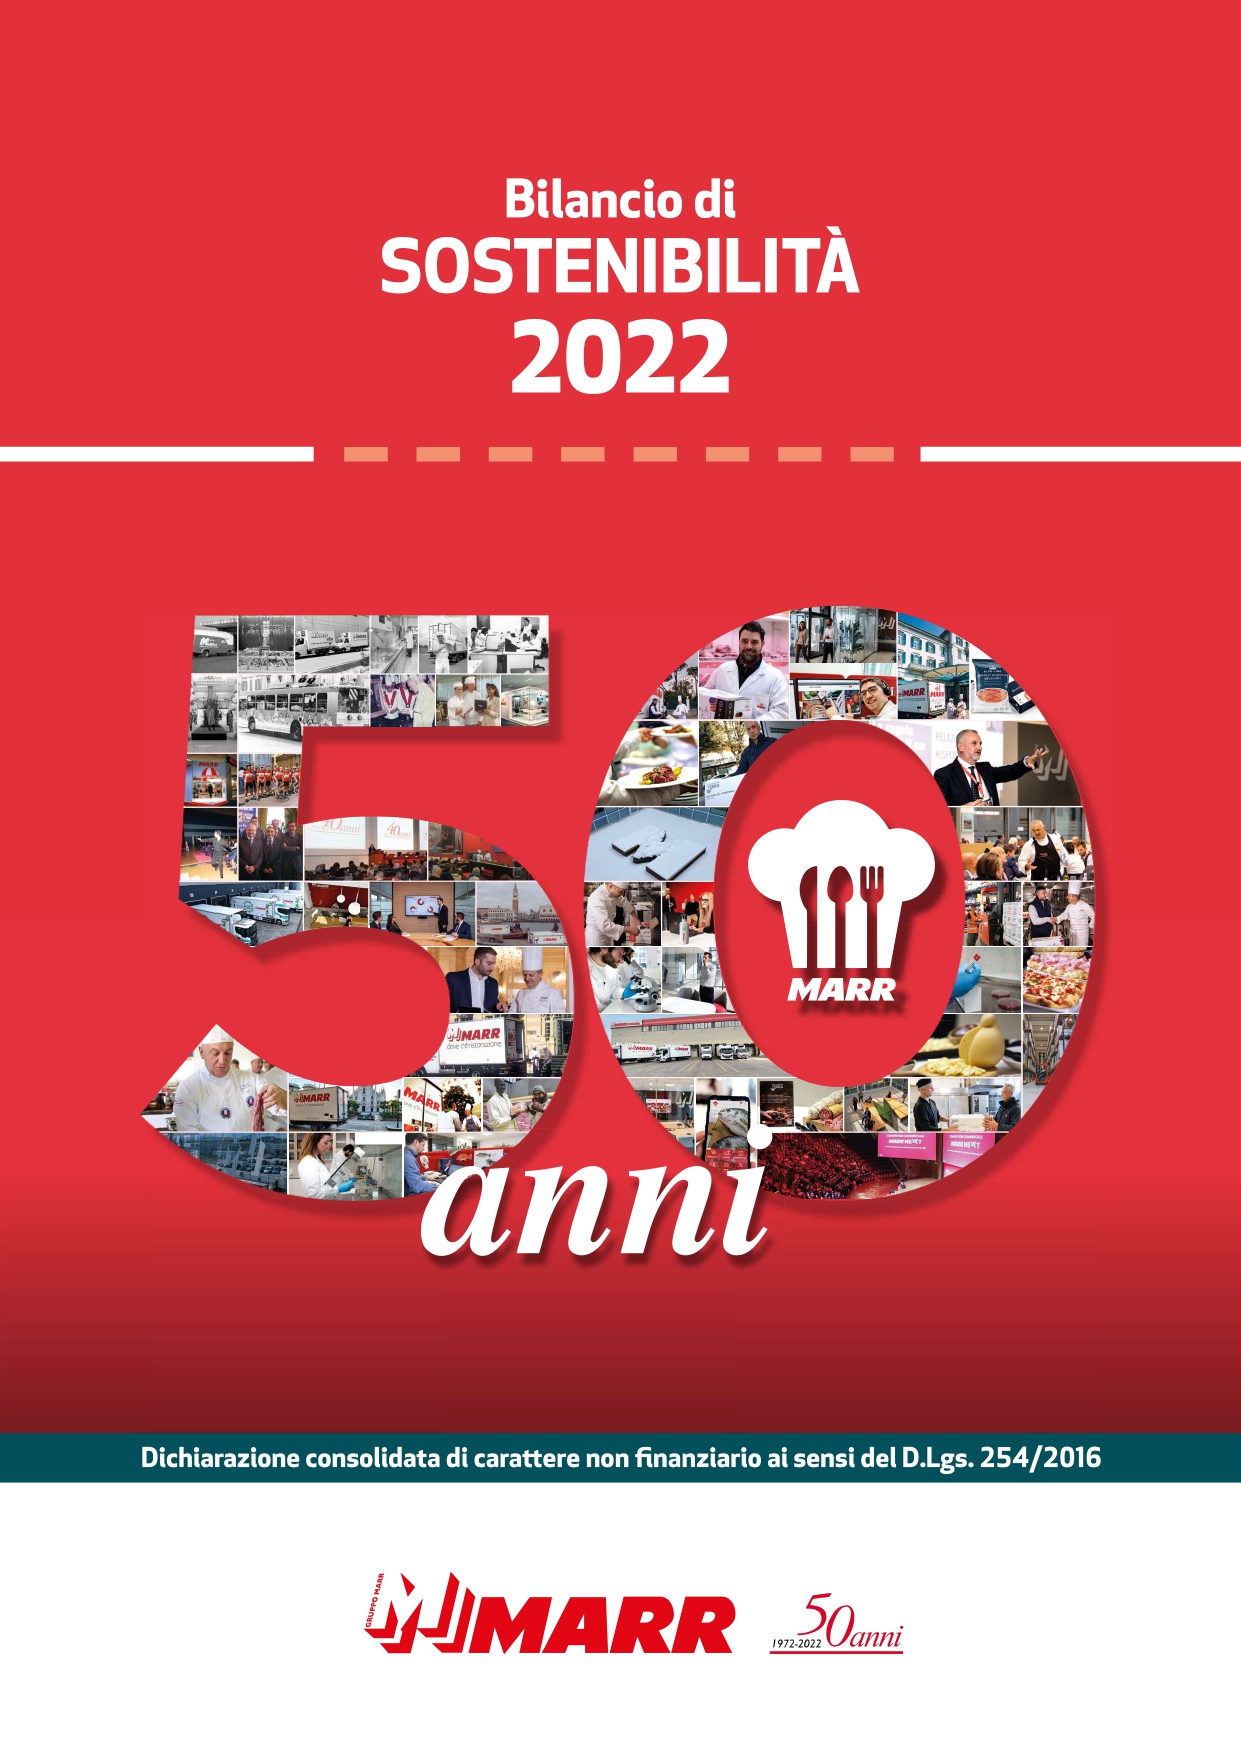 Bilancio sostenibilità MARR 2022